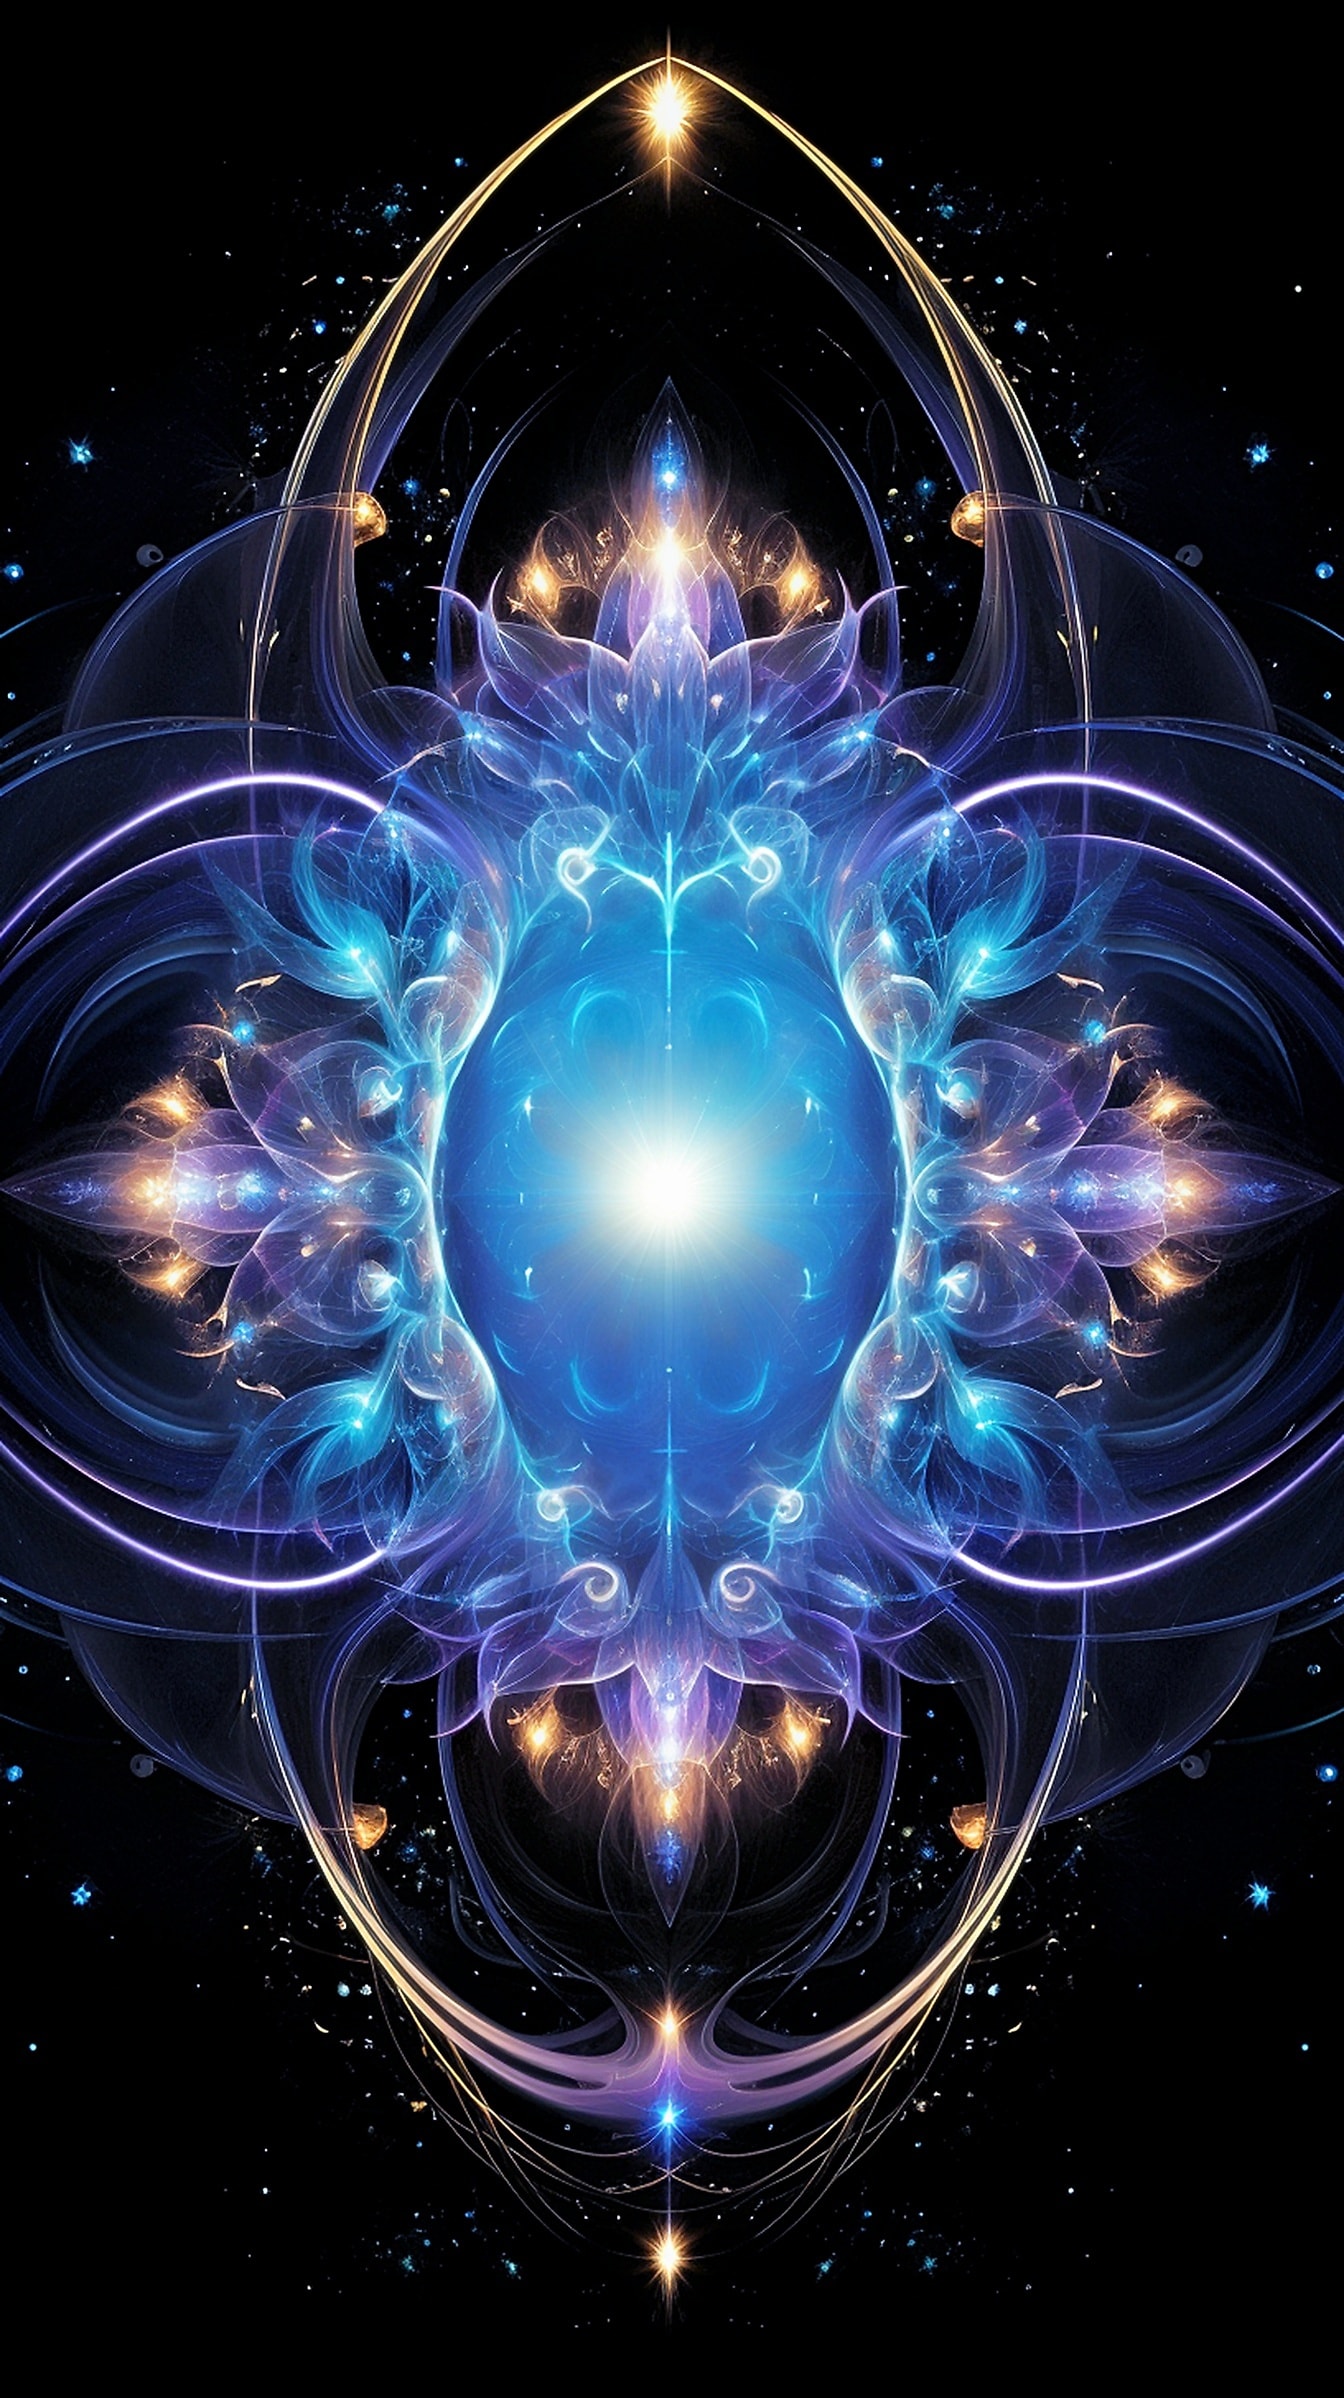 Thiết kế fractal tưởng tượng với một trung tâm tròn minh họa sự đối xứng nghệ thuật